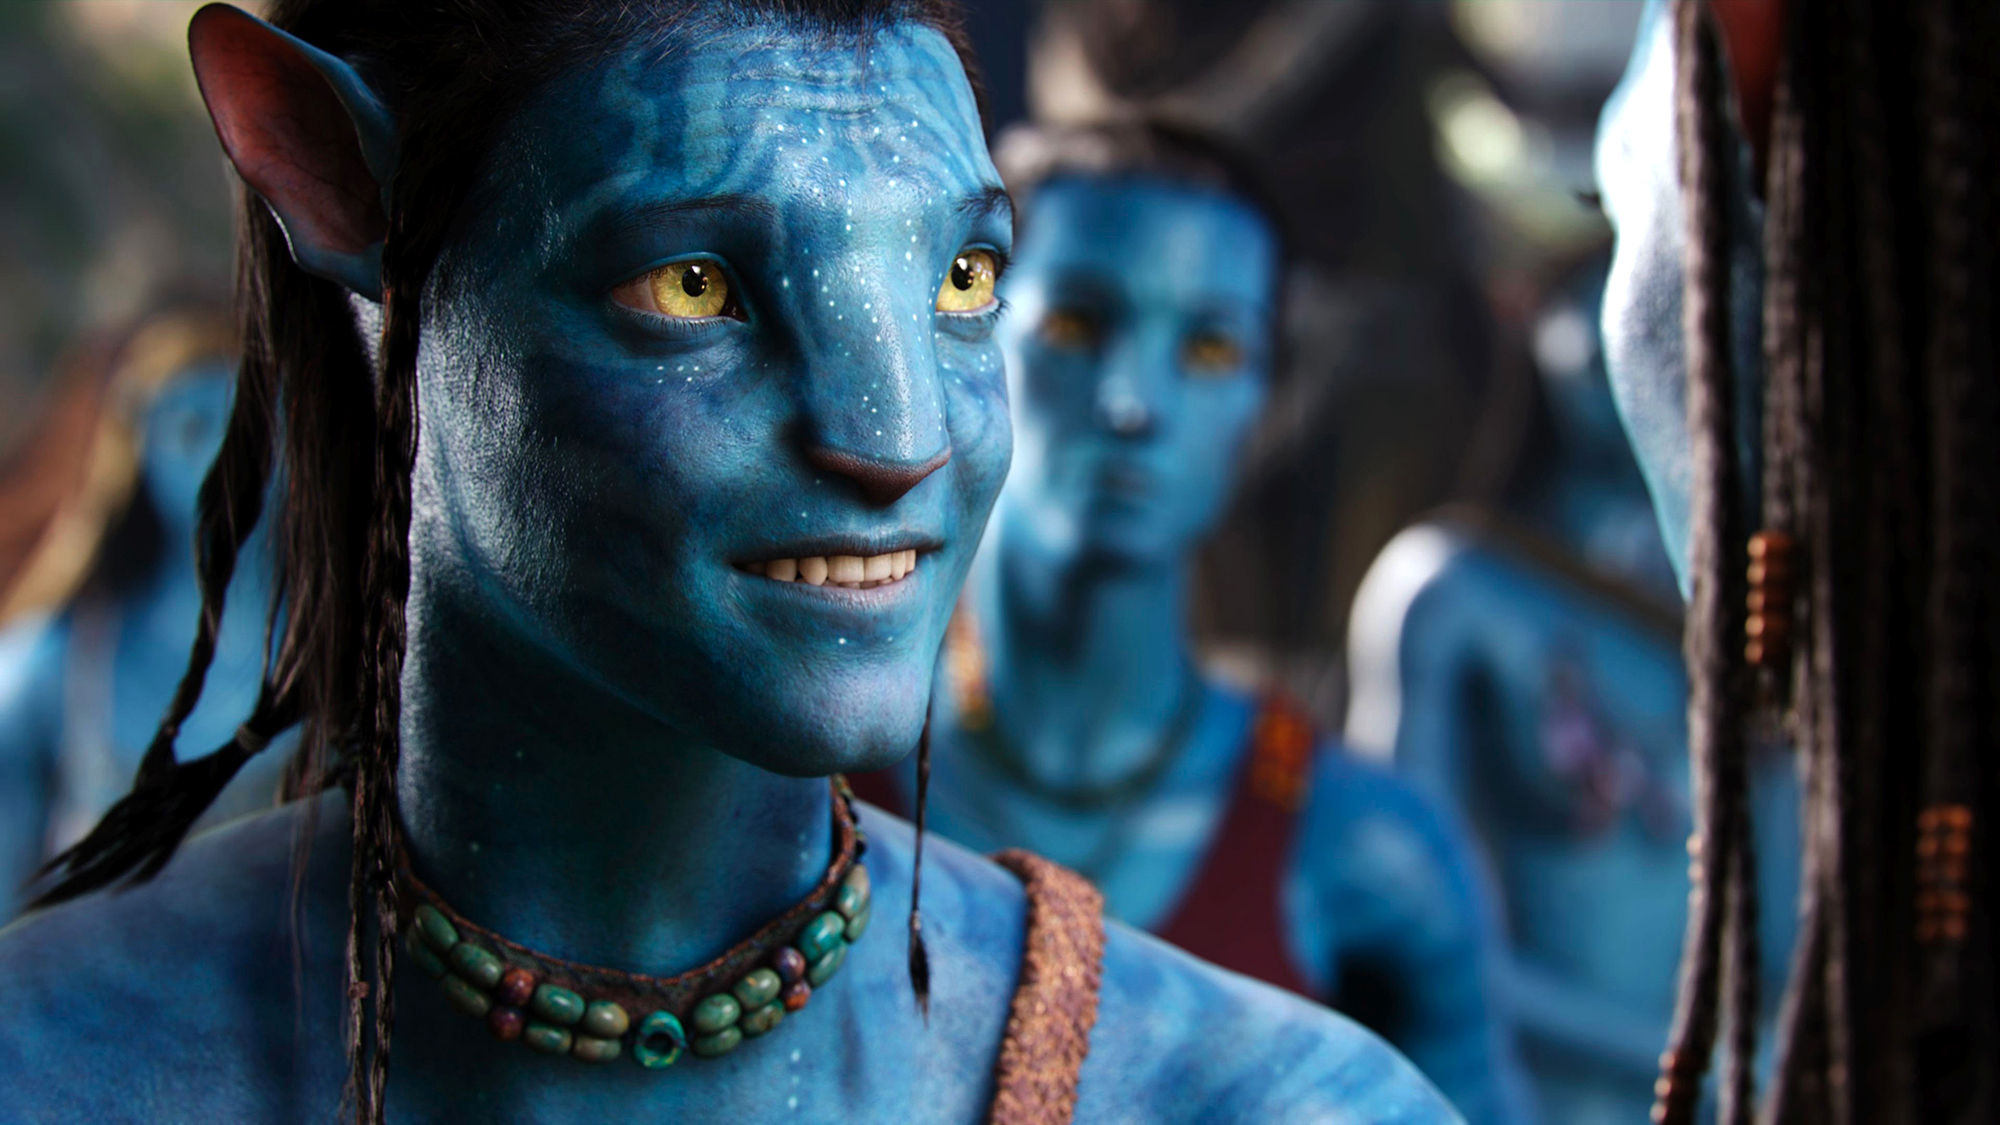 Avatar 2 đã chính thức xác nhận ngày phát hành, và các fan hâm mộ đang cực kỳ háo hức đón chờ. Với dàn diễn viên tài năng và đội ngũ sản xuất chuyên nghiệp, chắc chắn bộ phim này sẽ tiếp tục làm nên hiện tượng trên toàn thế giới. Hãy đón xem trên các kênh giải trí chính thức và cập nhật những thông tin mới nhất về Avatar 2.